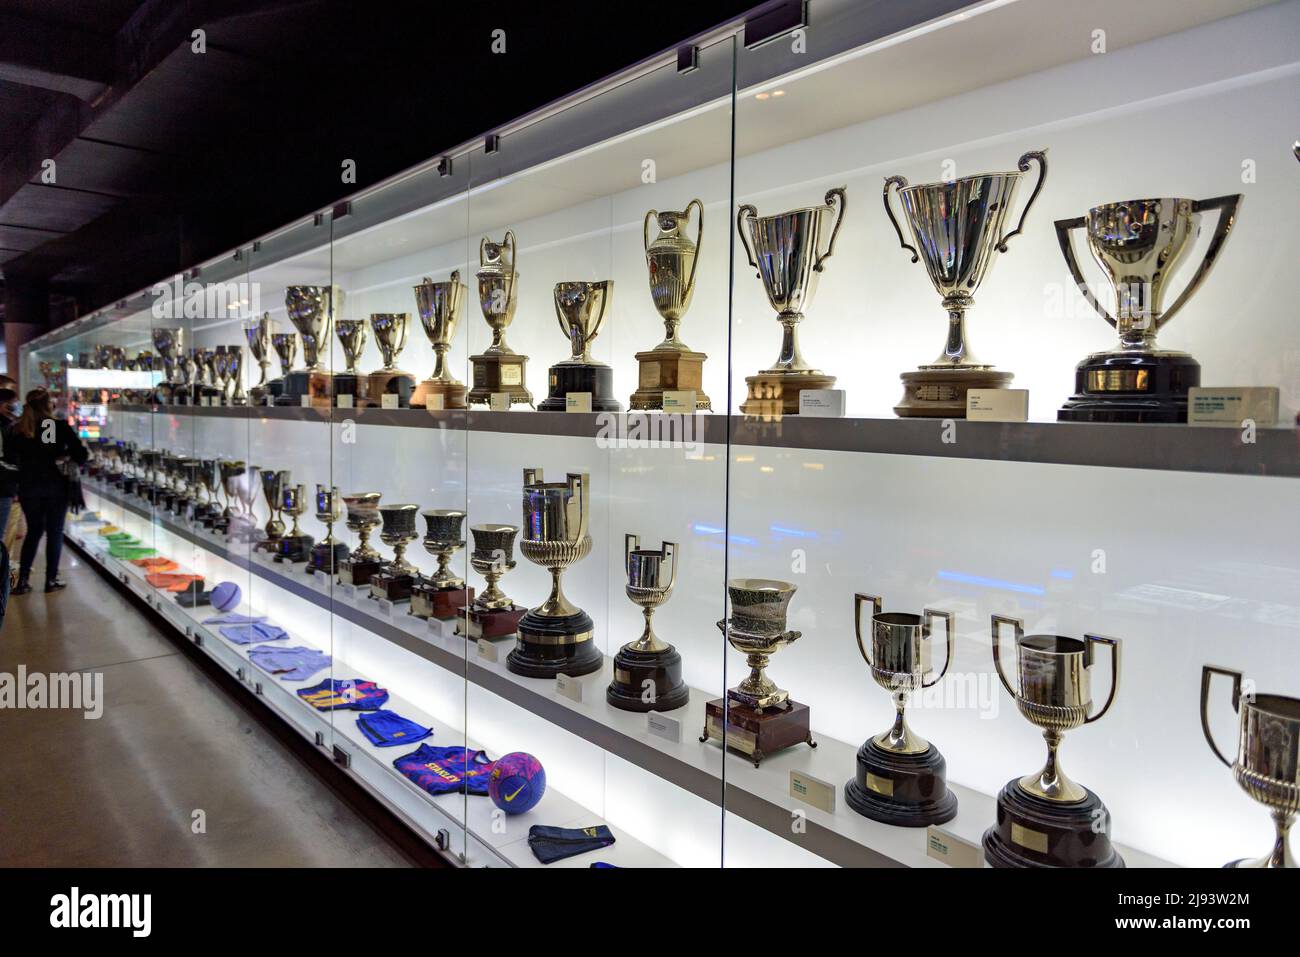 Trofei nel Museo FC Barcelona, nello stadio Camp Nou (Barcellona, Catalogna, Spagna) ESP: Trofeos en el Museo del FC Barcelona, en el Camp Nou Foto Stock